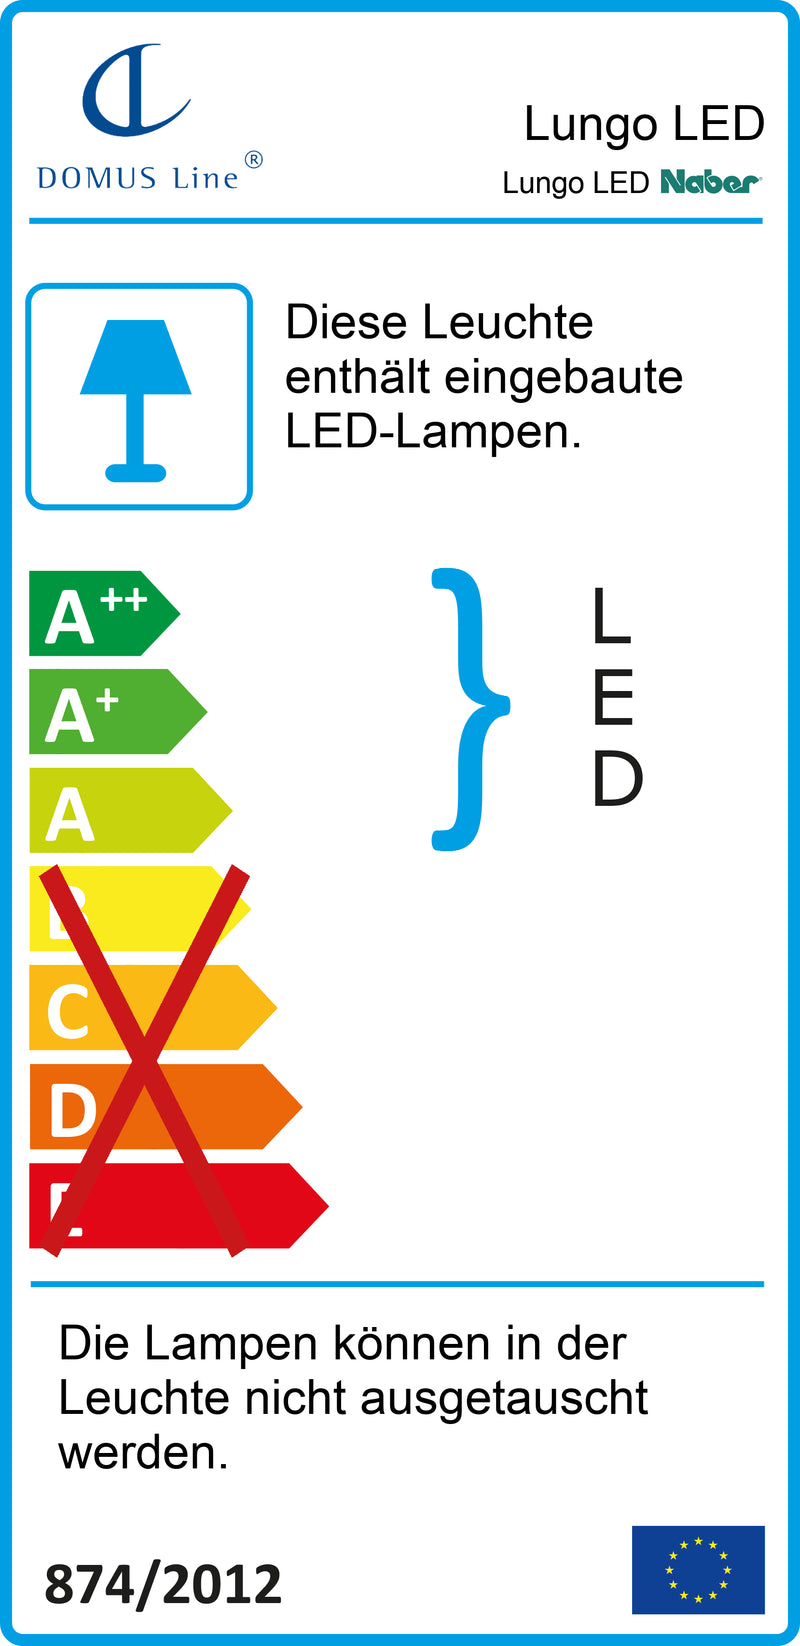 E-Label zu Zeichnung zu Lungo LED als Variante L 600 mm, 8,2 W, edelstahlfarbig von Naber GmbH in der Kategorie Lichttechnik in Österreich auf conceptshop.at